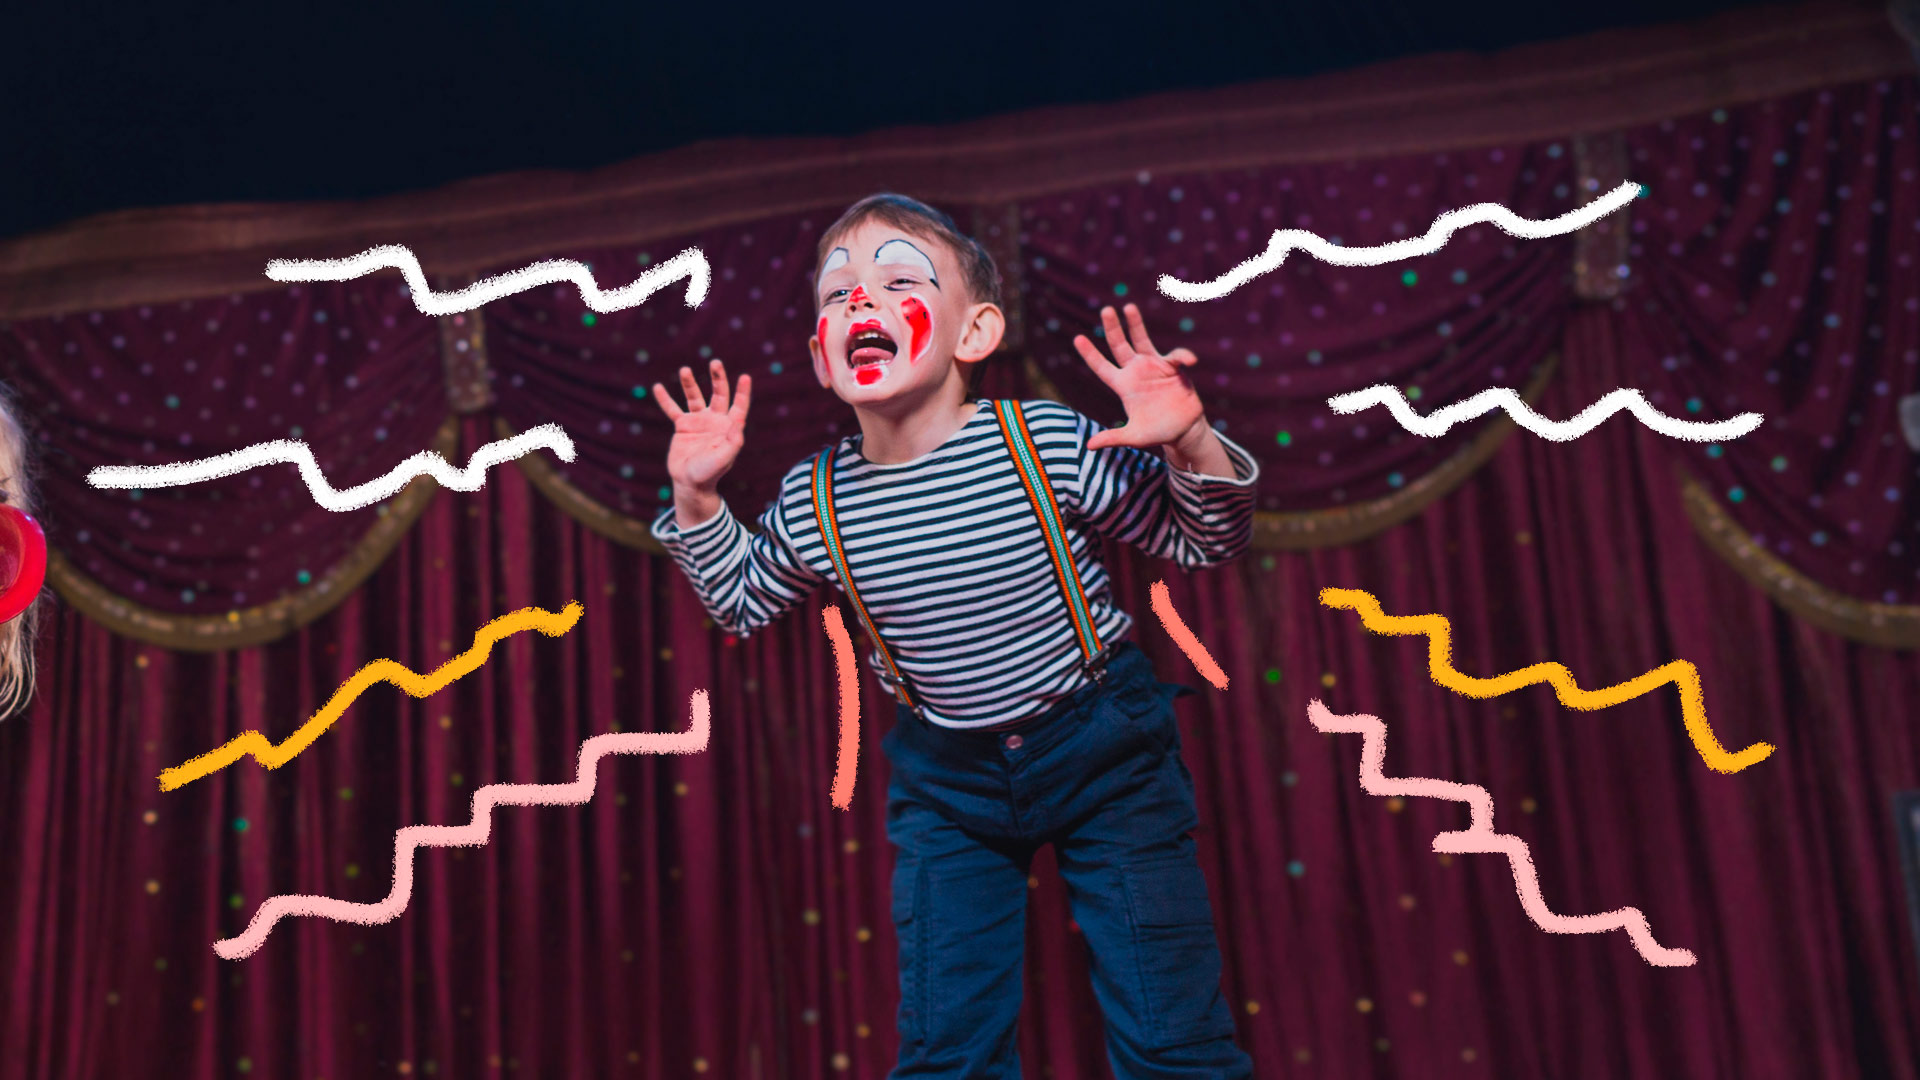 Um menino com roupas e maquiagem de palhaço está no palco. Atrás dele, ao fundo, uma cortina vermelha típica de teatro